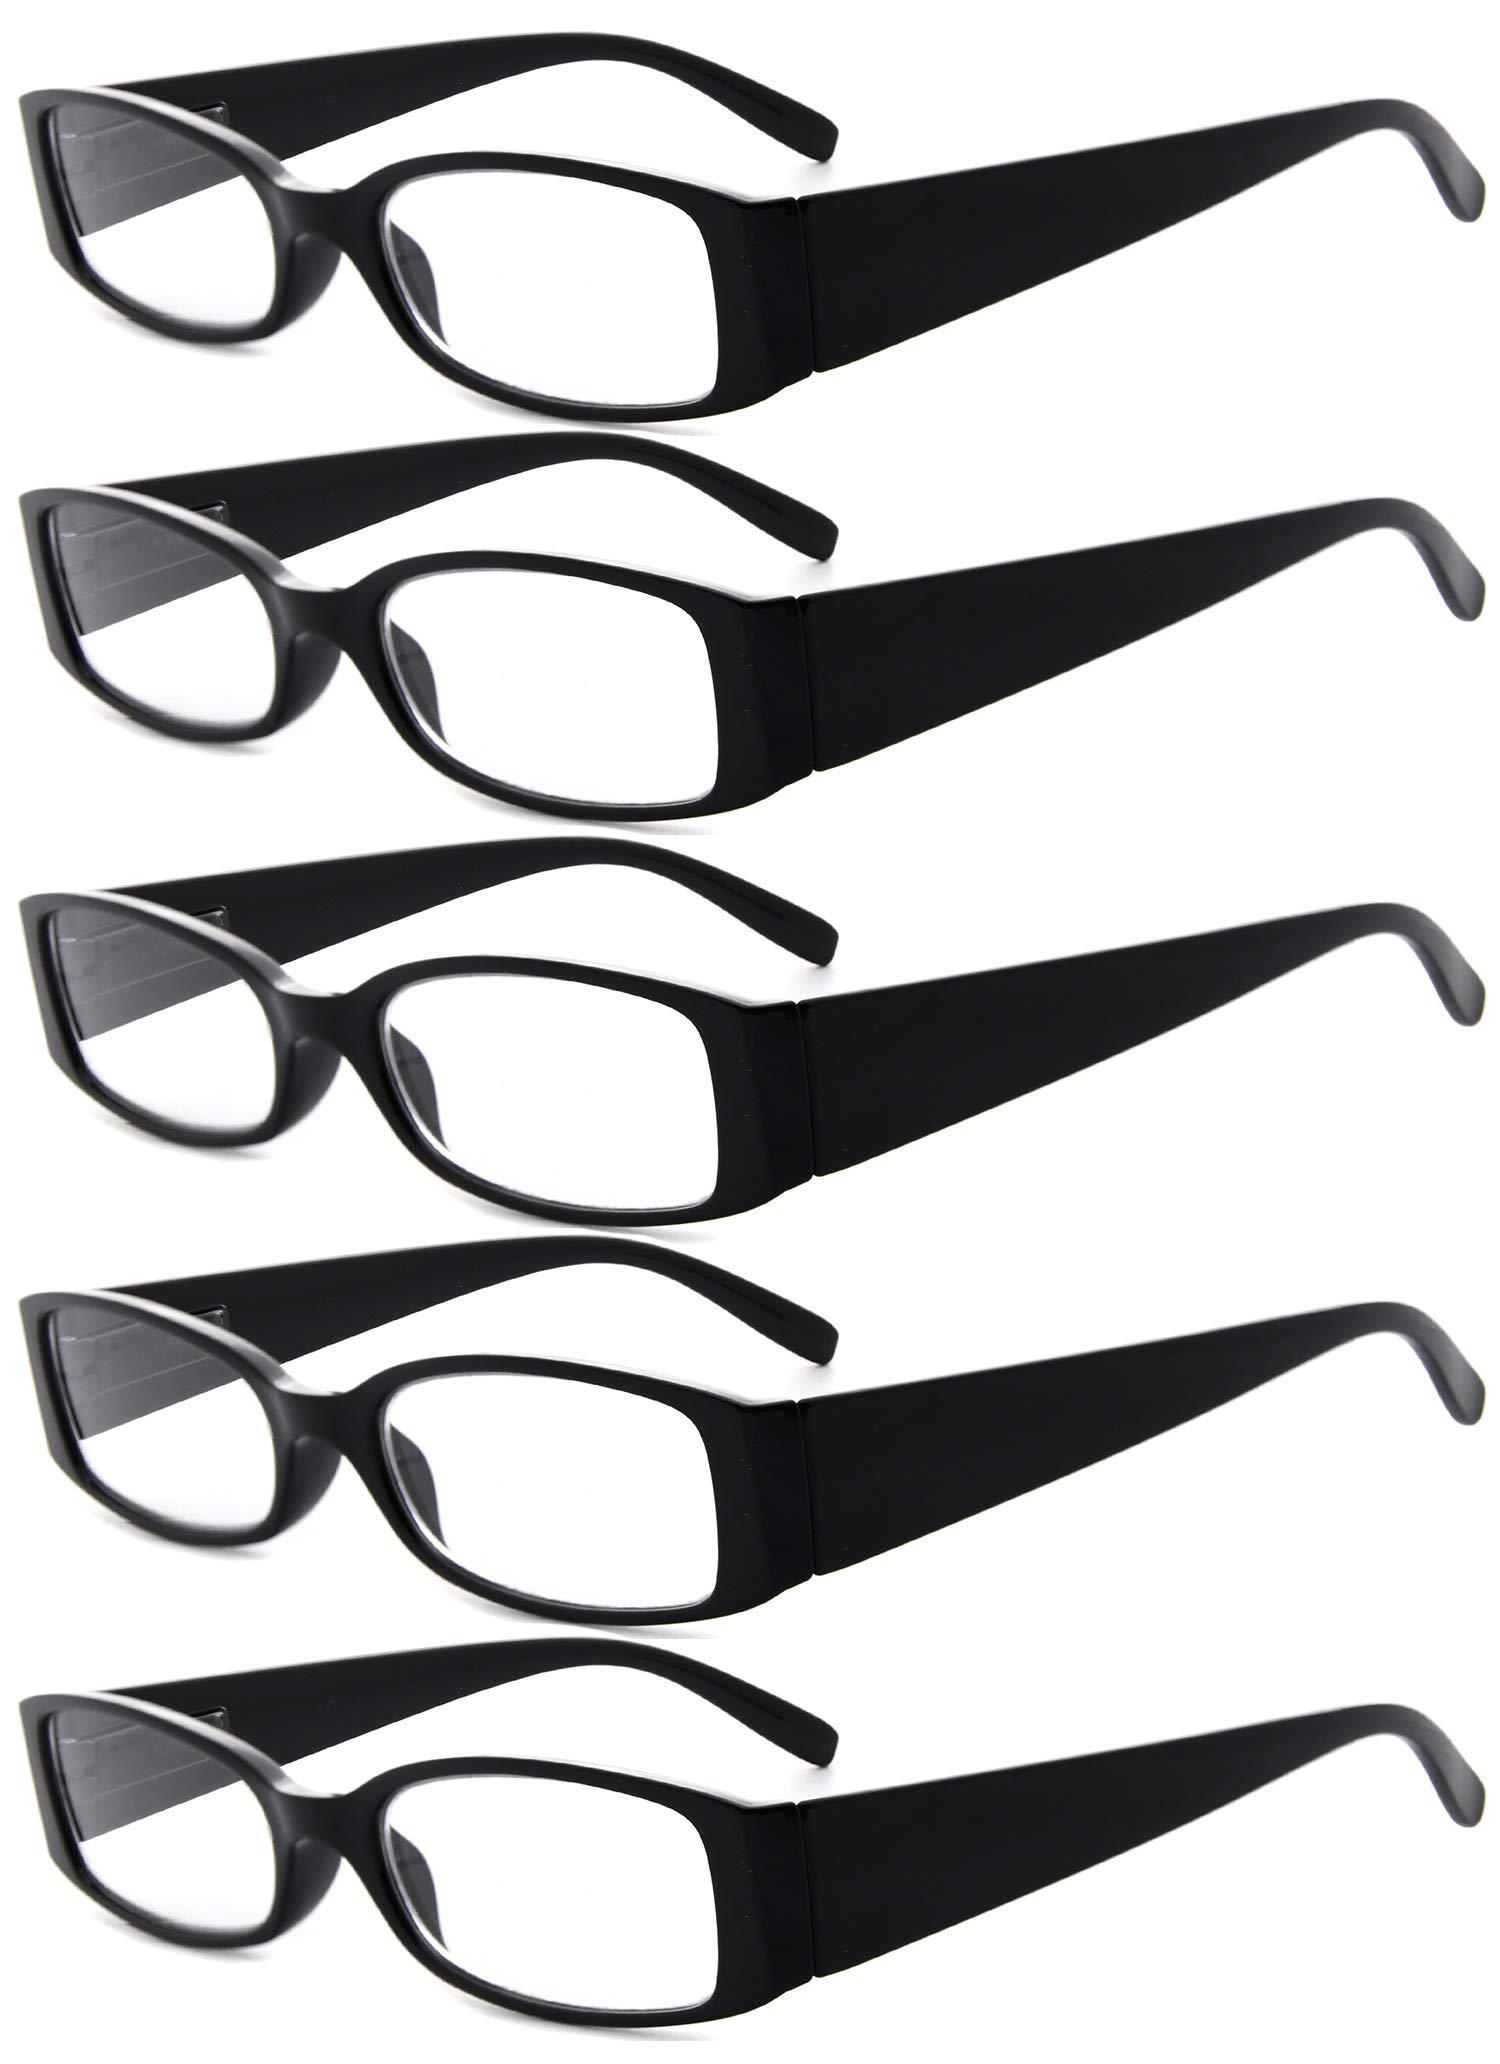 Eyekepper 5 Pairs Reading Glasses for Women Reading +3.00 Black Frame Reading Eyeglasses 5